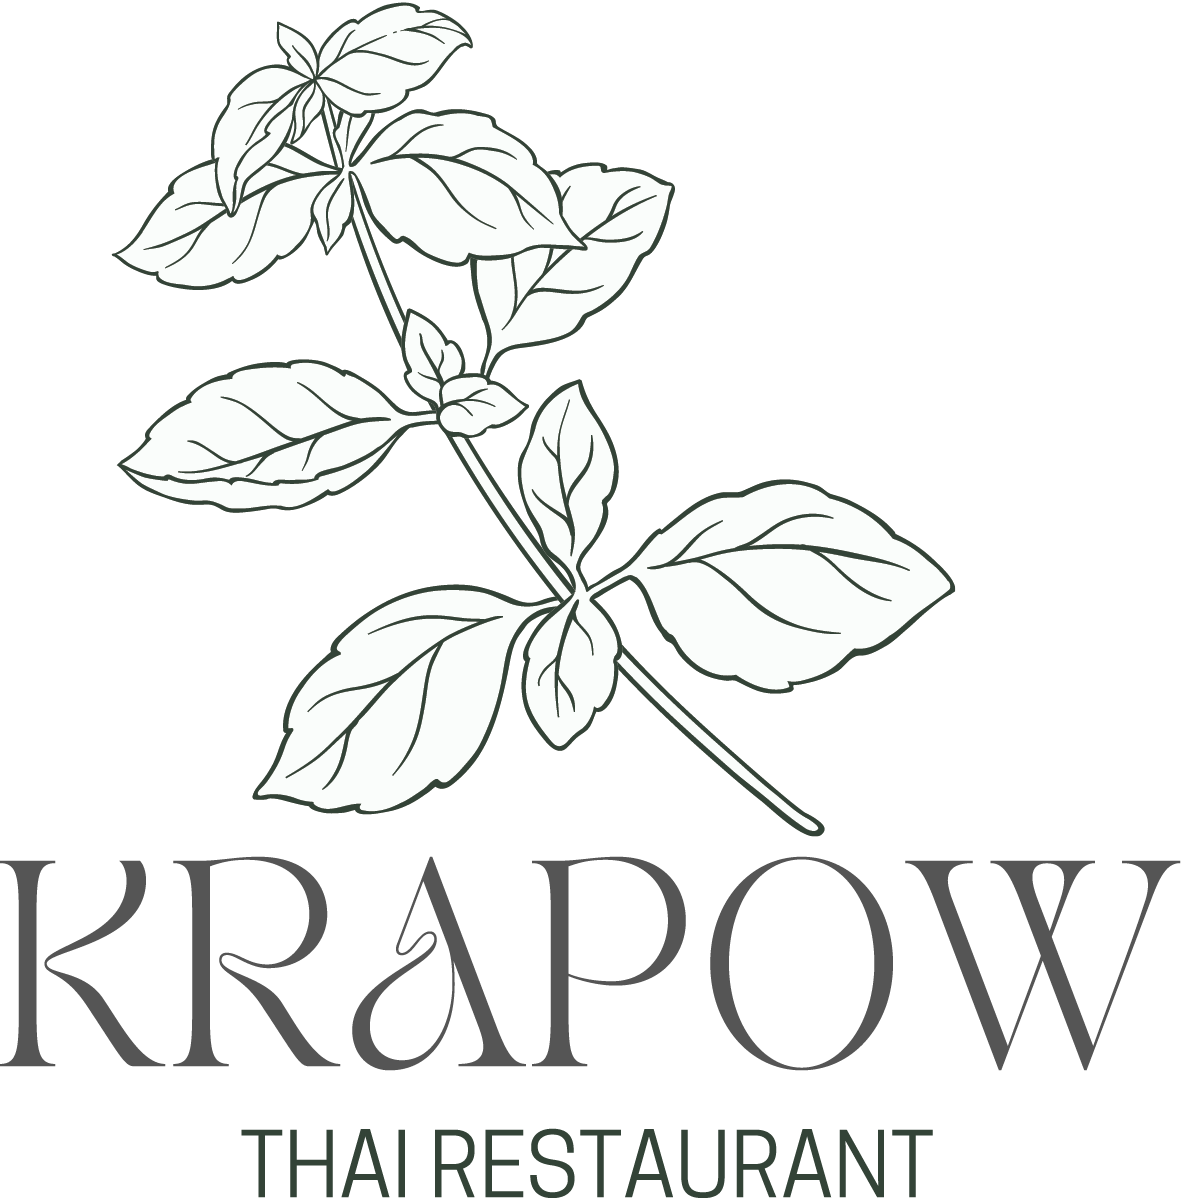 Krapow Thai